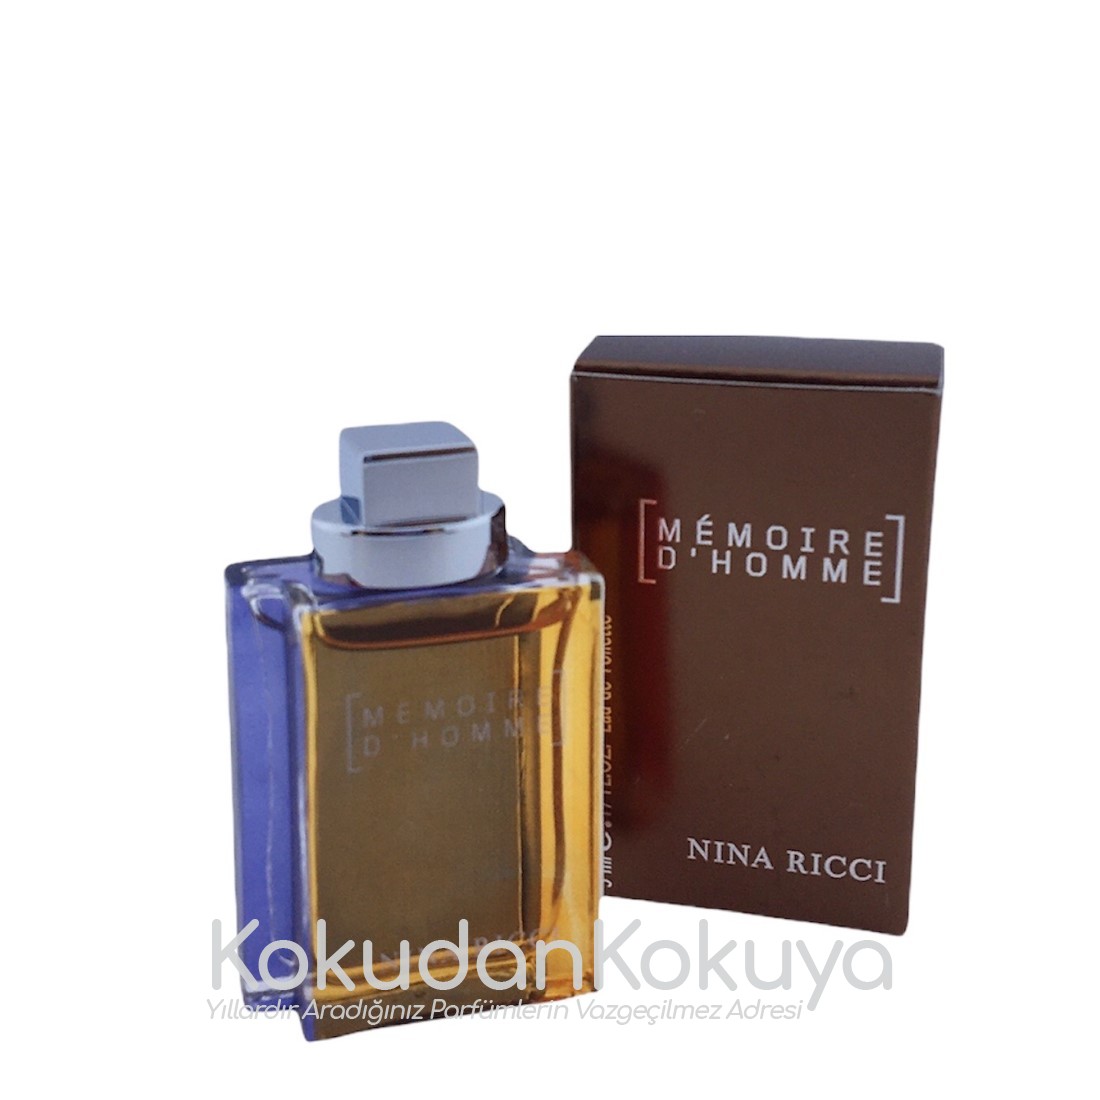 NINA RICCI Memoire D'Homme (Vintage) Parfüm Erkek 5ml Minyatür (Mini Perfume) Dökme 